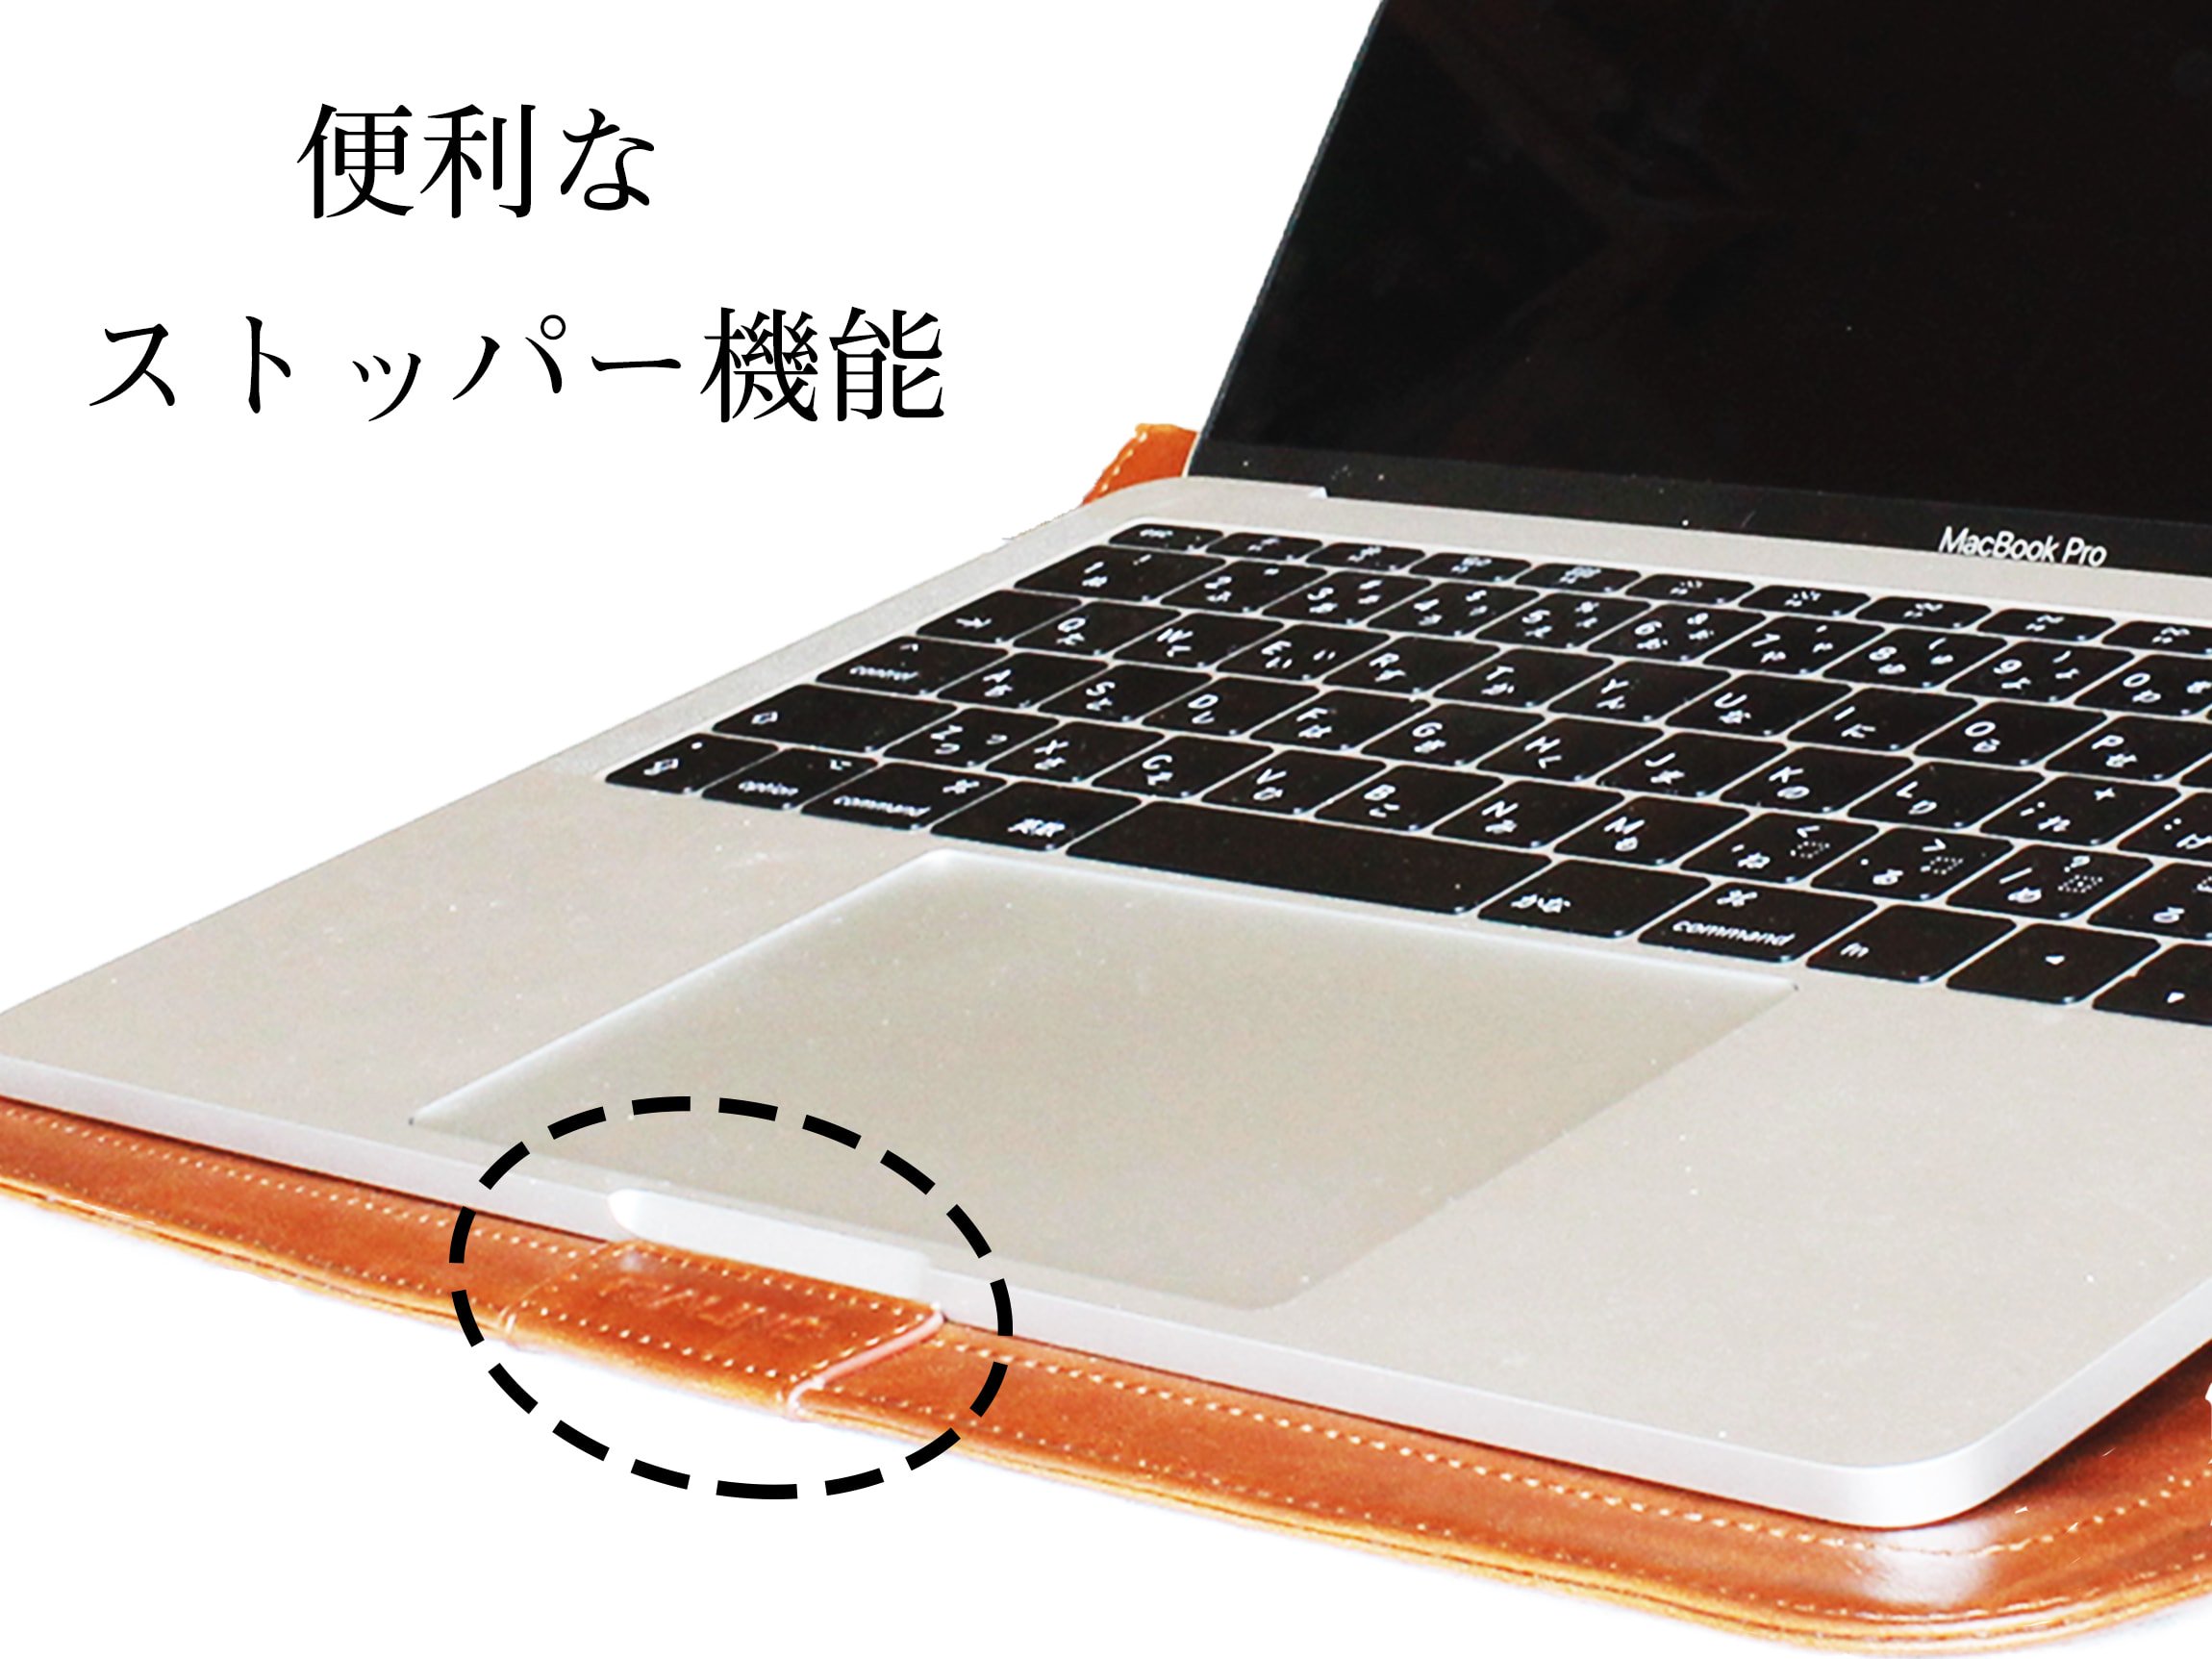 MacBook ケースには便利な滑り止め機能が付いています